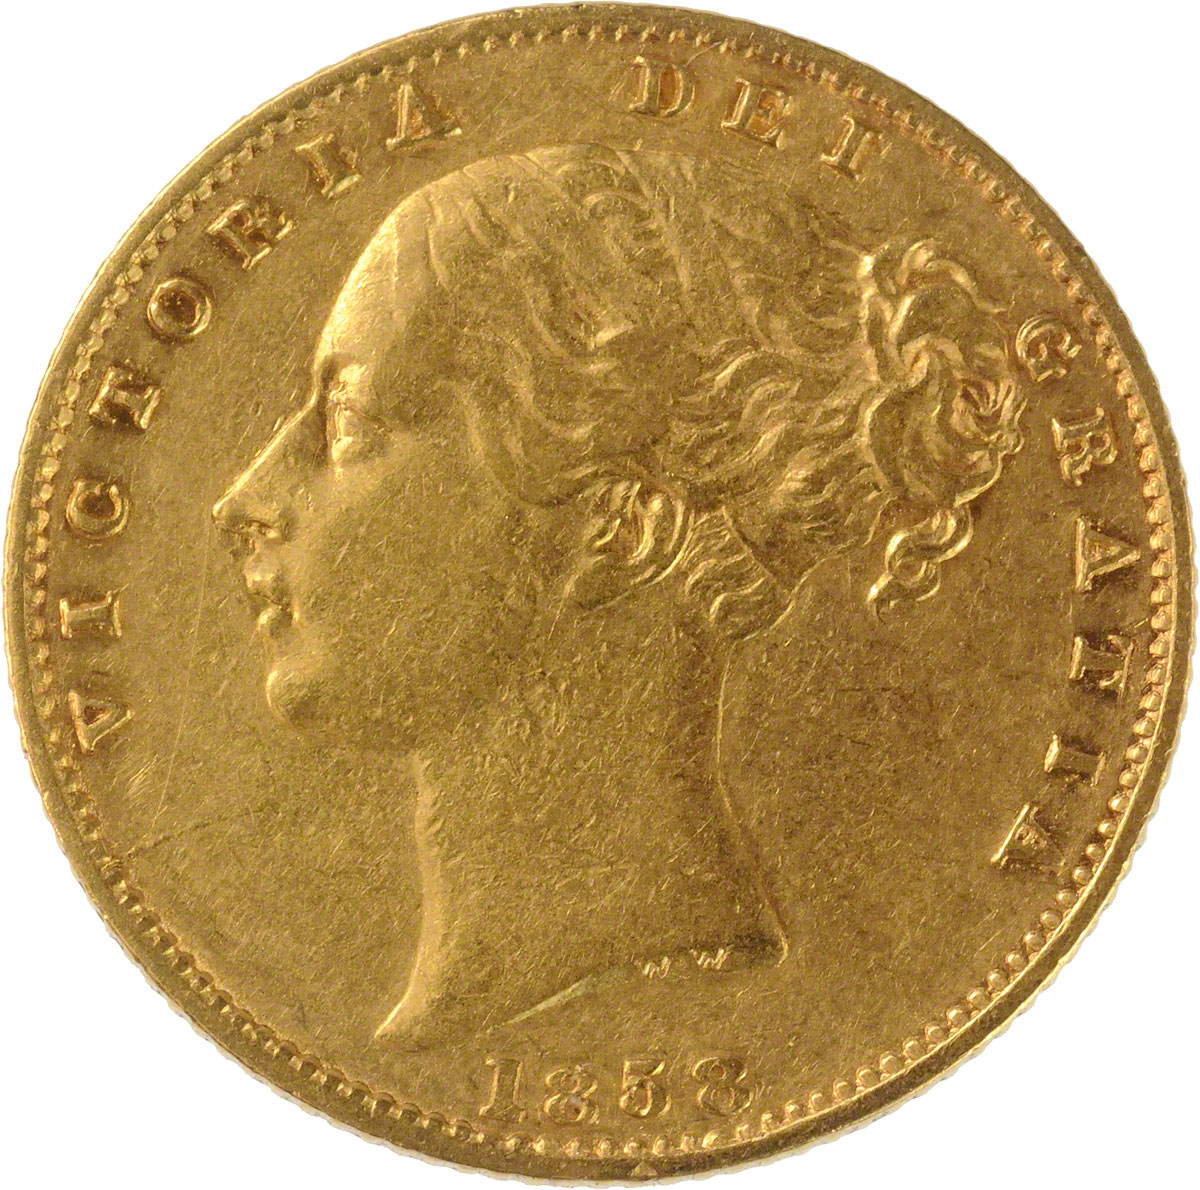 1858 Βικτώρια (Νομισματοκοπείο Λονδίνου)